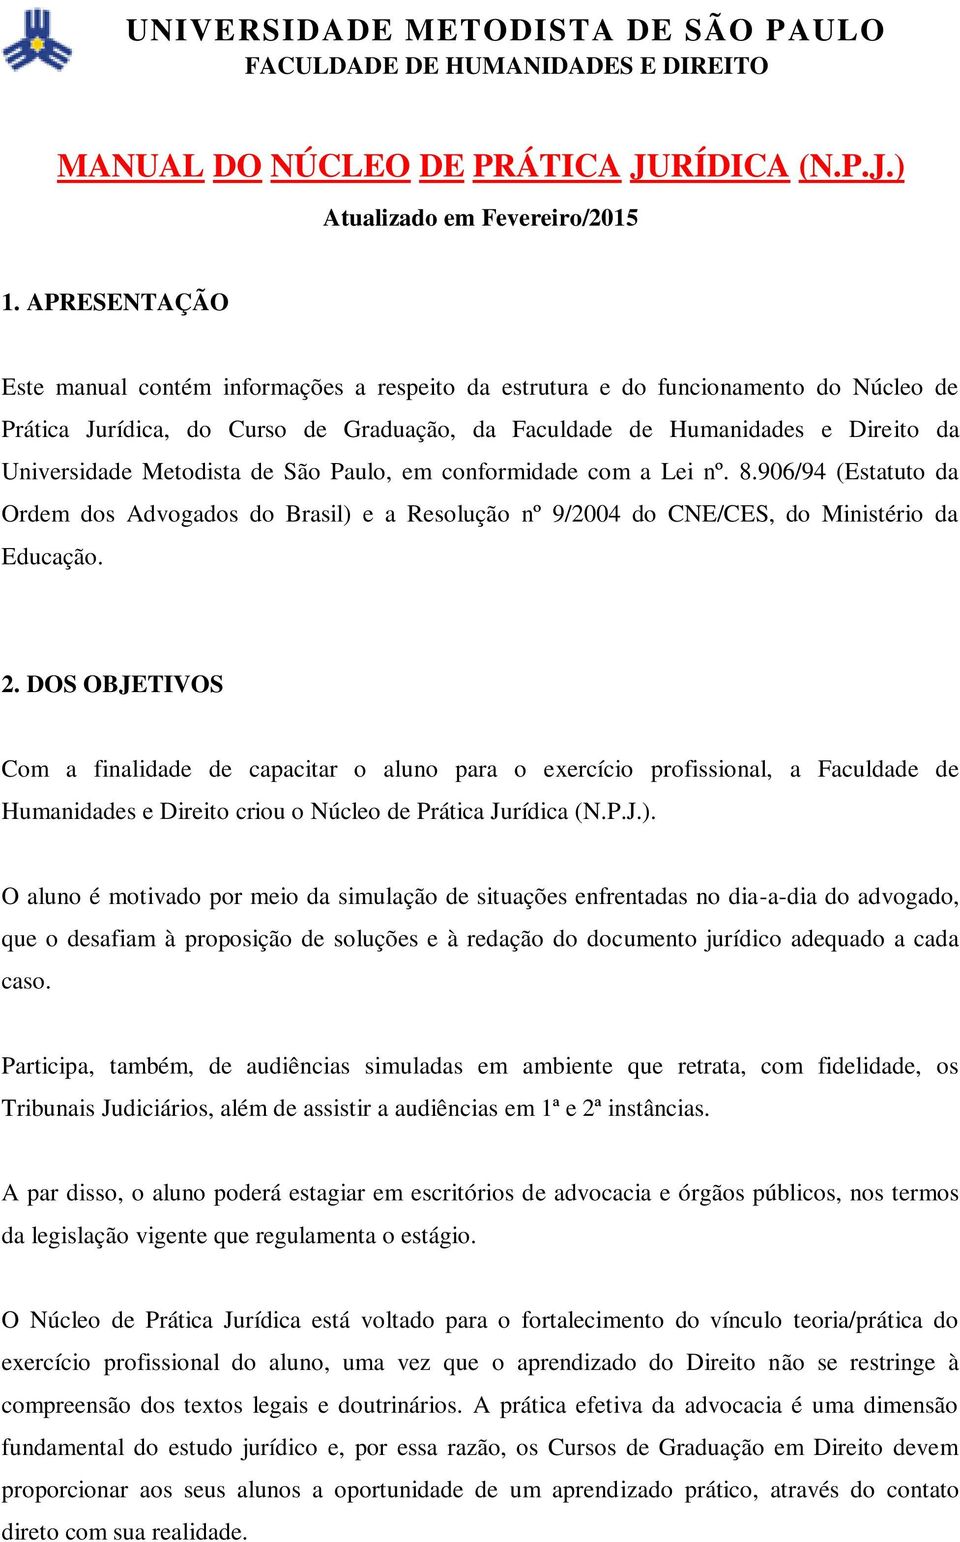 Metodista de São Paulo, em conformidade com a Lei nº. 8.906/94 (Estatuto da Ordem dos Advogados do Brasil) e a Resolução nº 9/2004 do CNE/CES, do Ministério da Educação. 2.